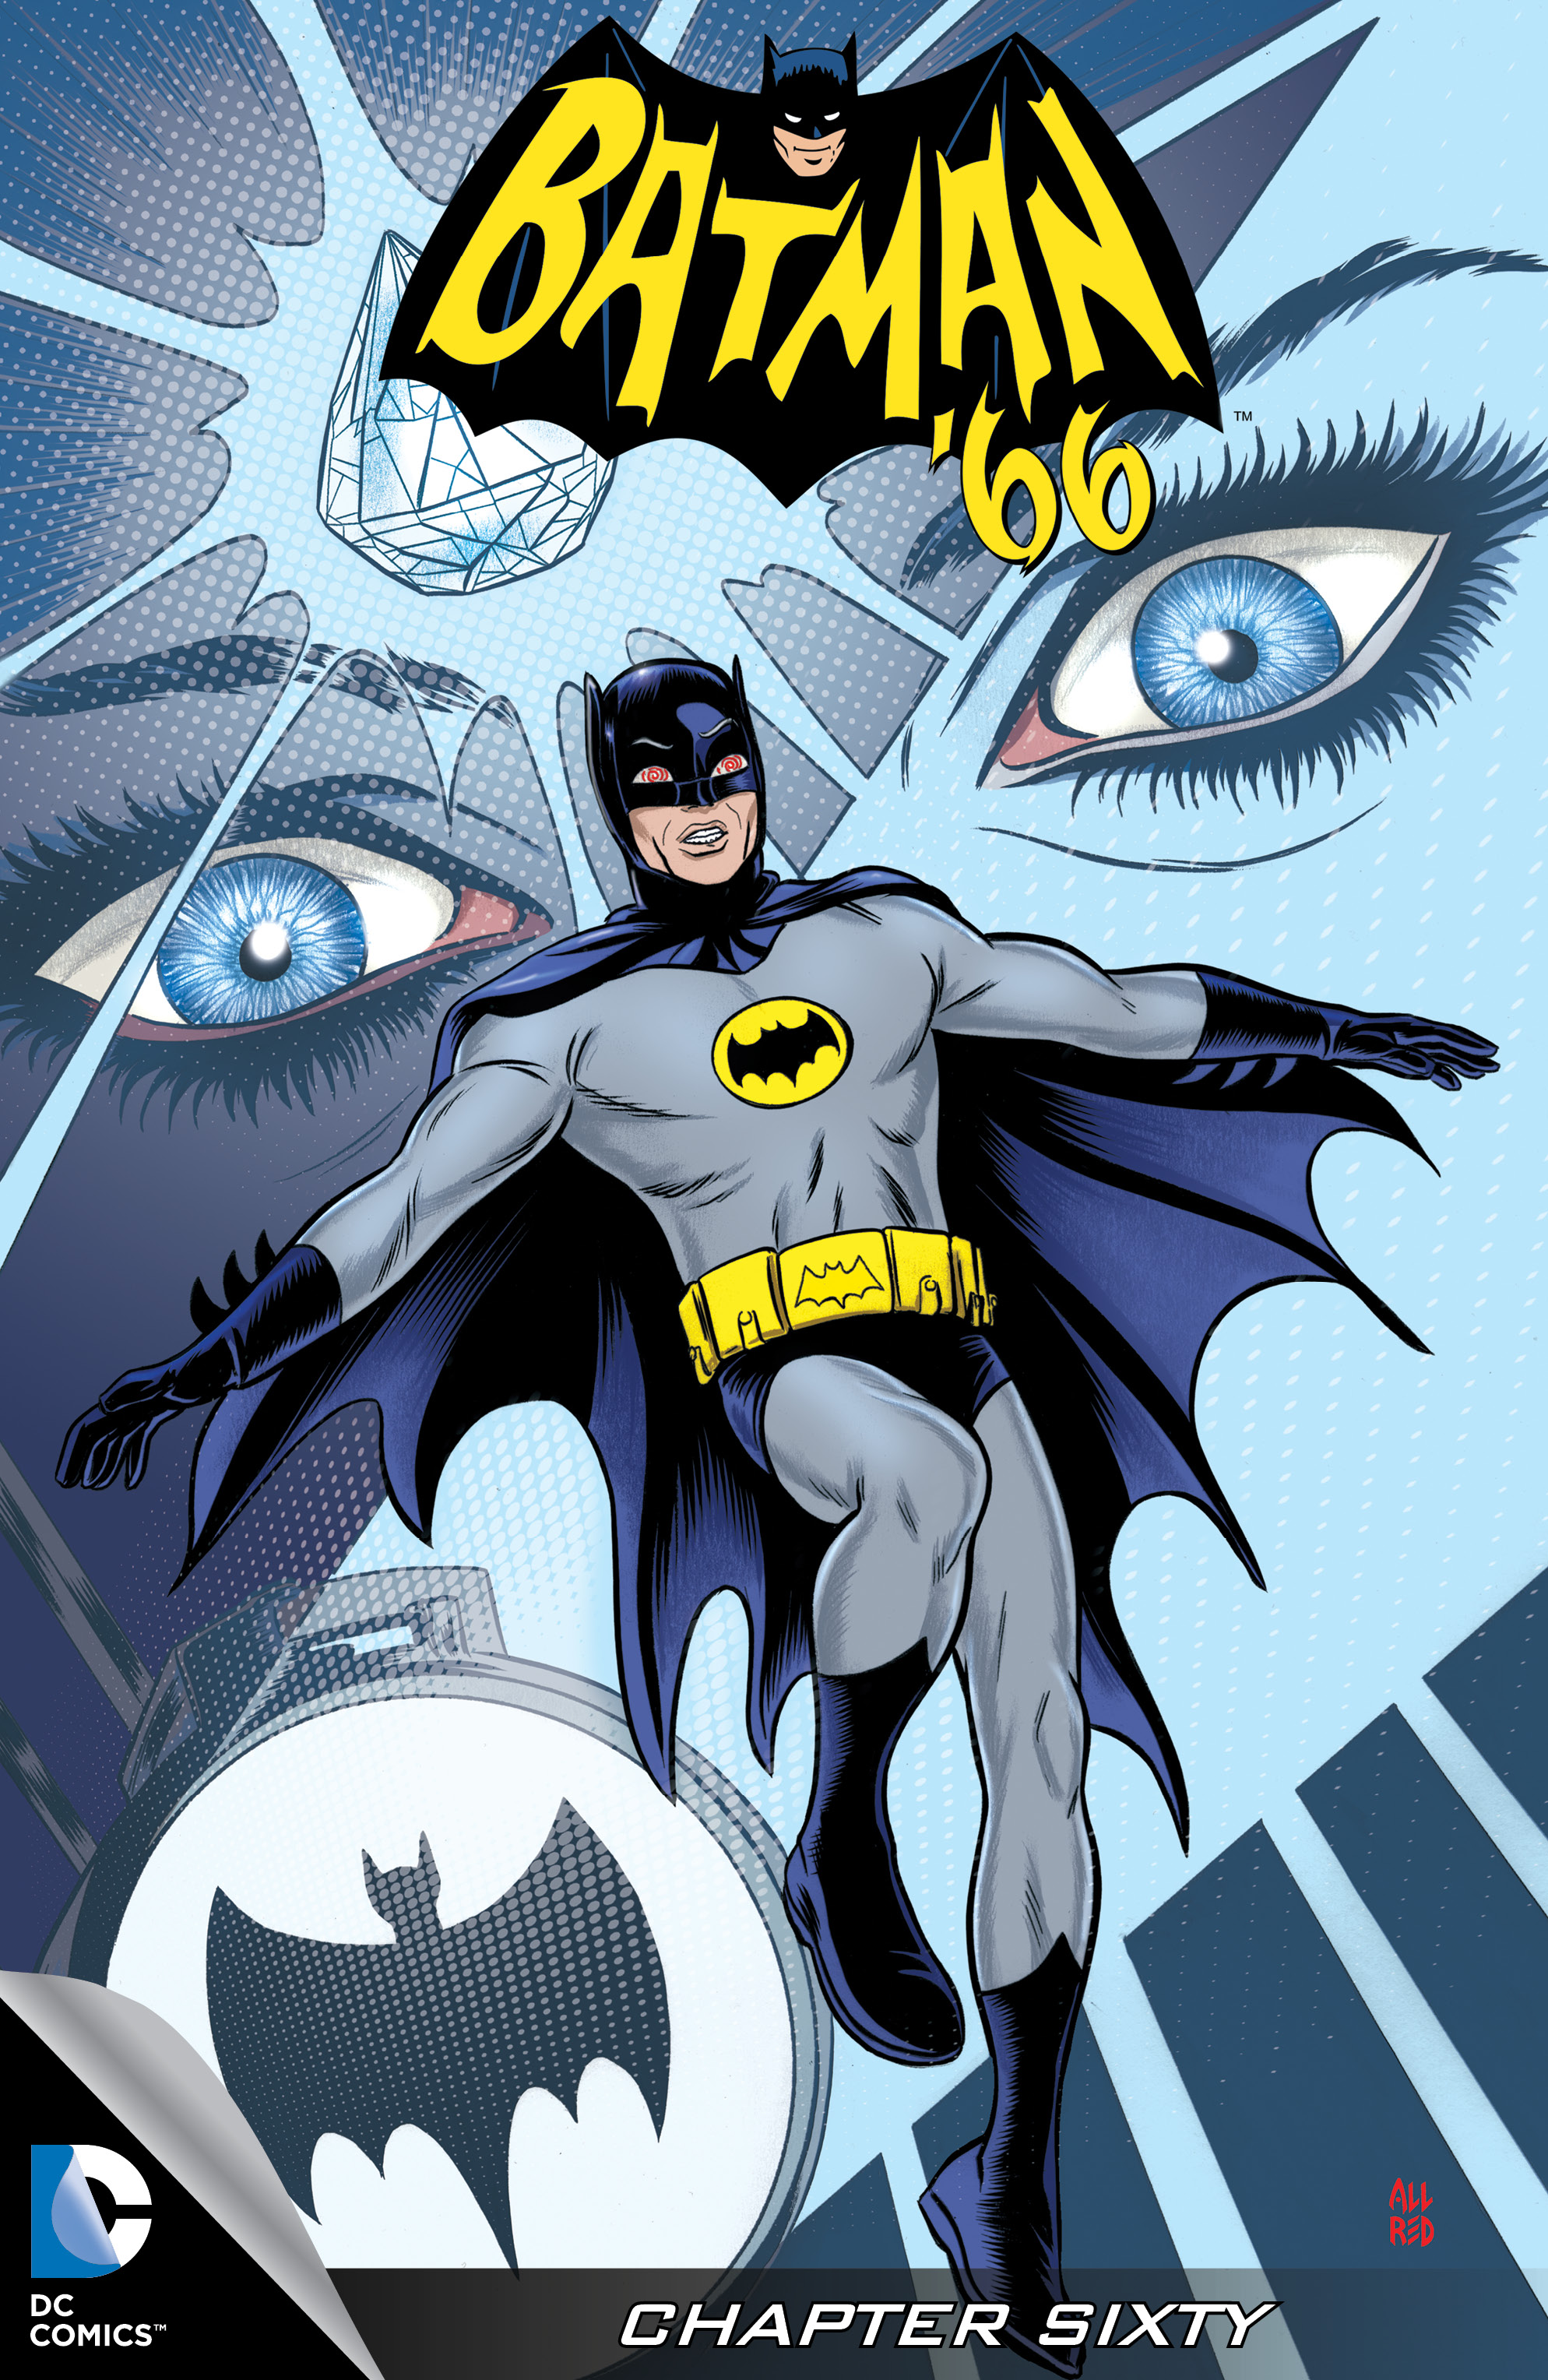 Batman '66 #60 preview images